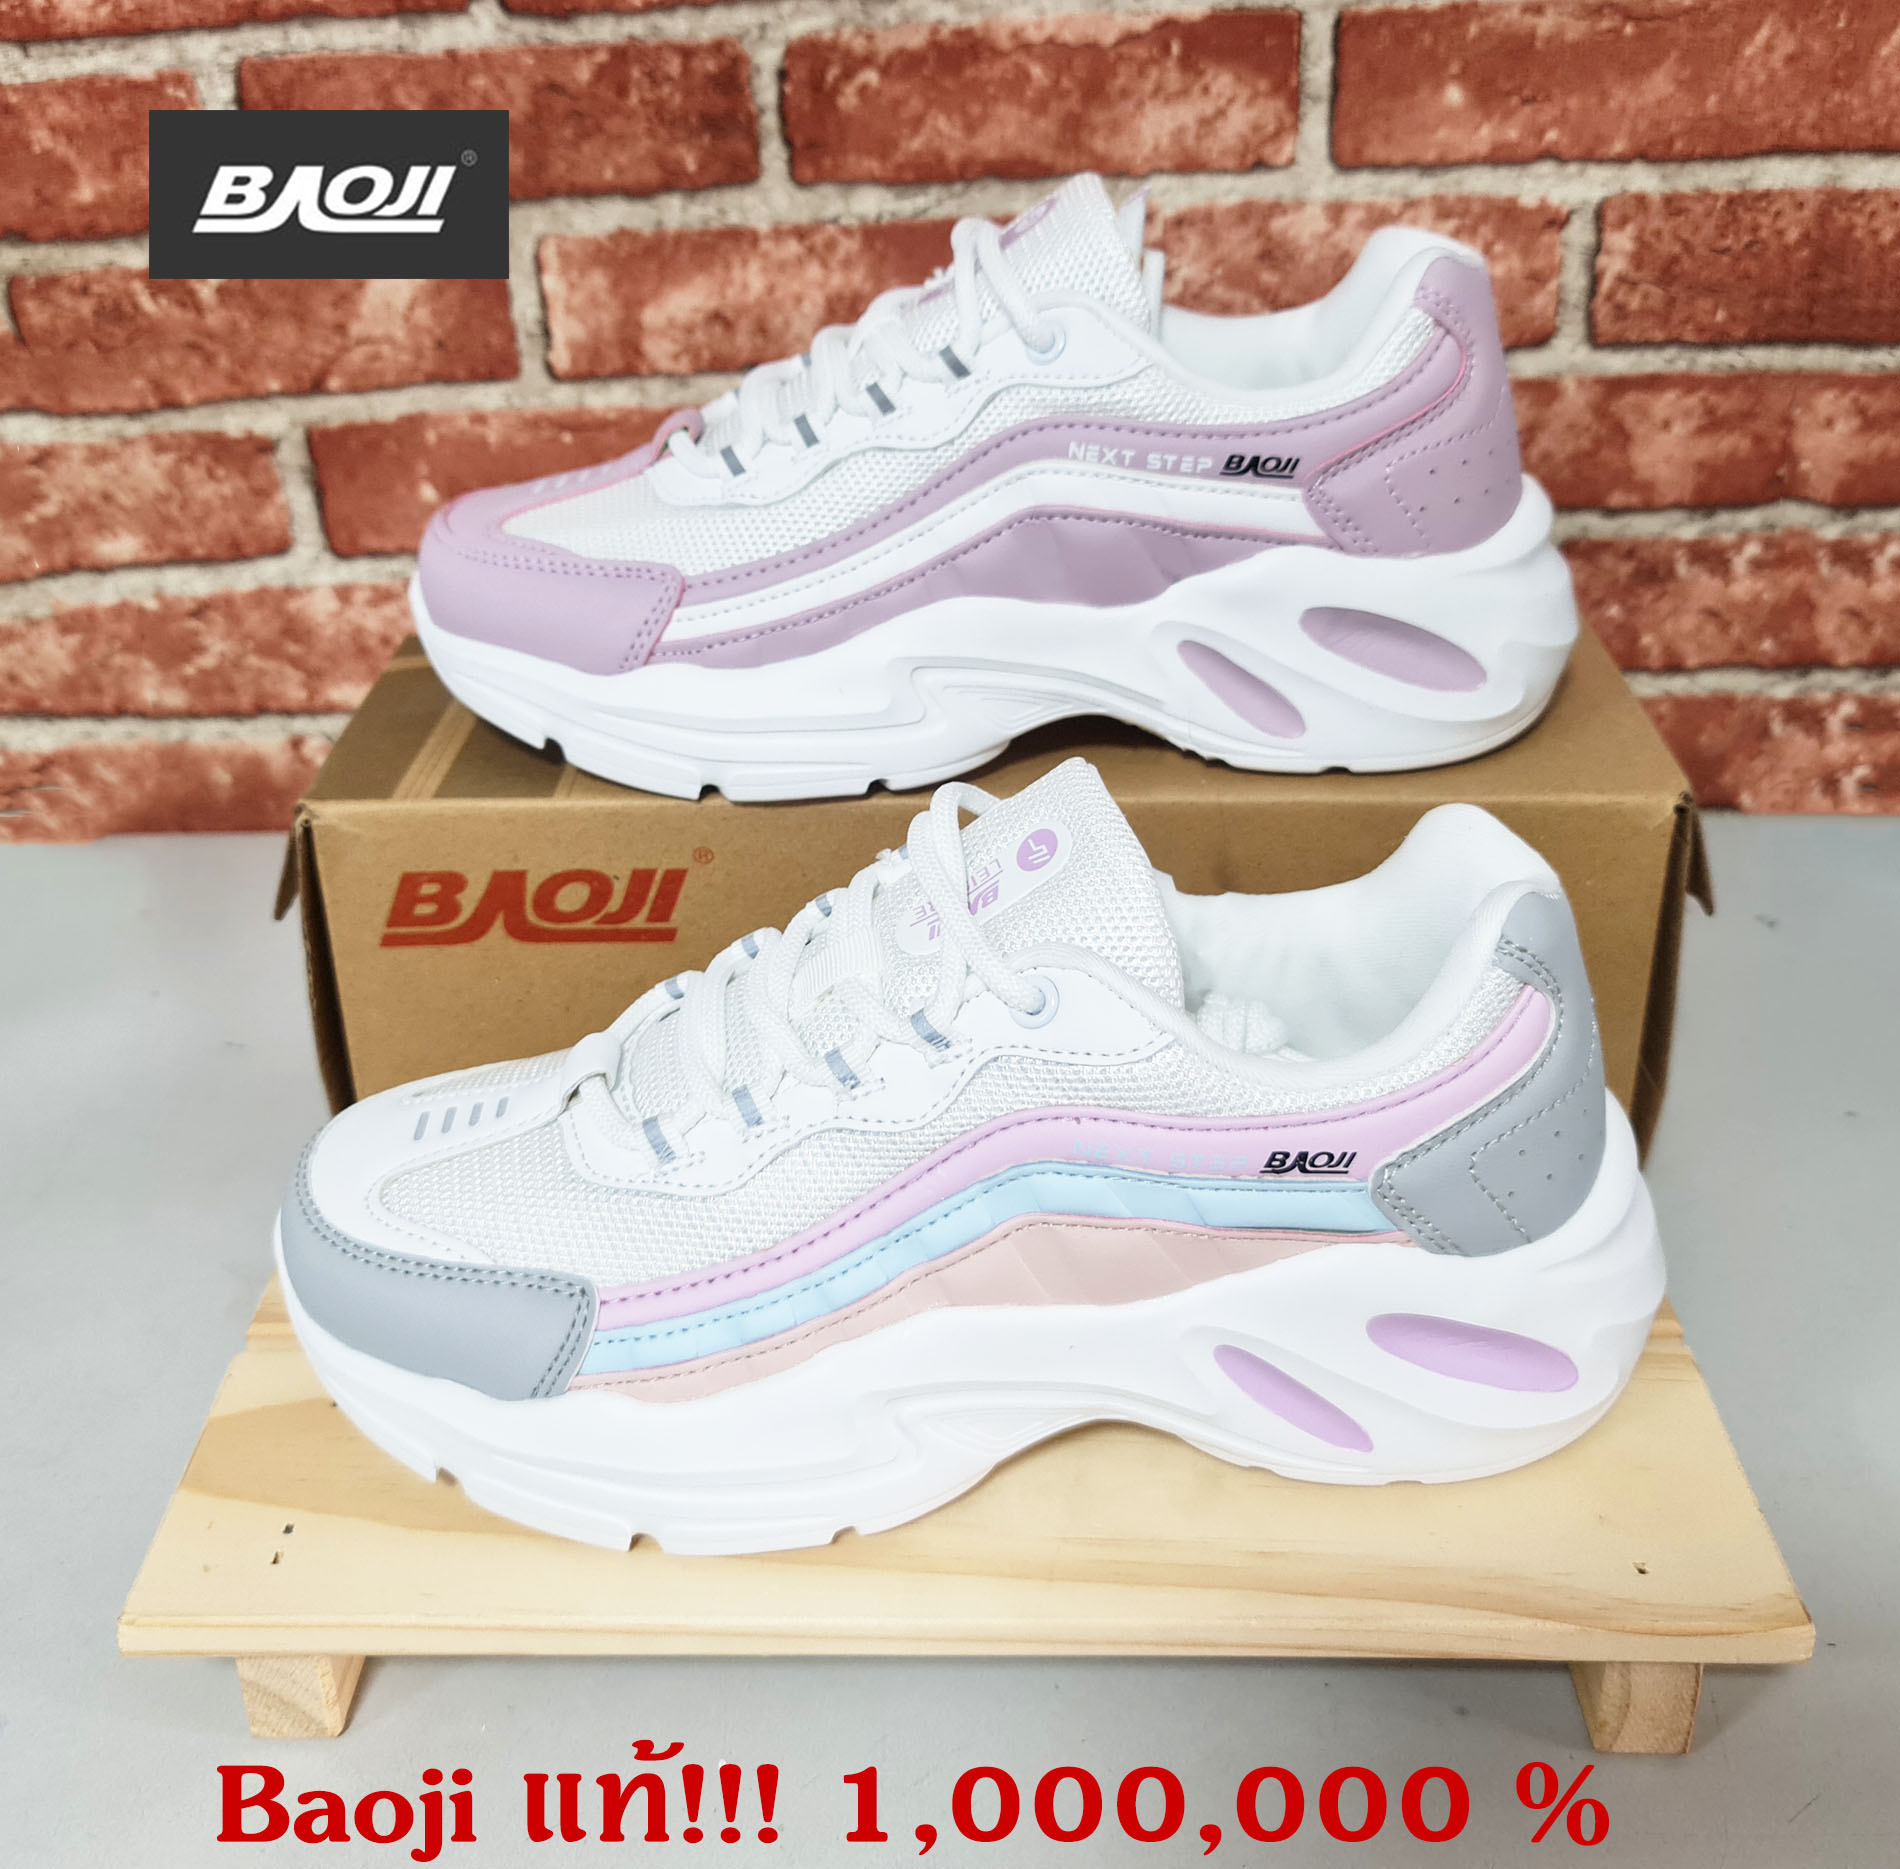 **Baoji แท้**  1,000,000 %  (รุ่น BJW-732) - สำหรับผู้หญิง รองเท้าผ้าใบสามารถใส่เล่นกีฬาได้ เบา มี 2 สี